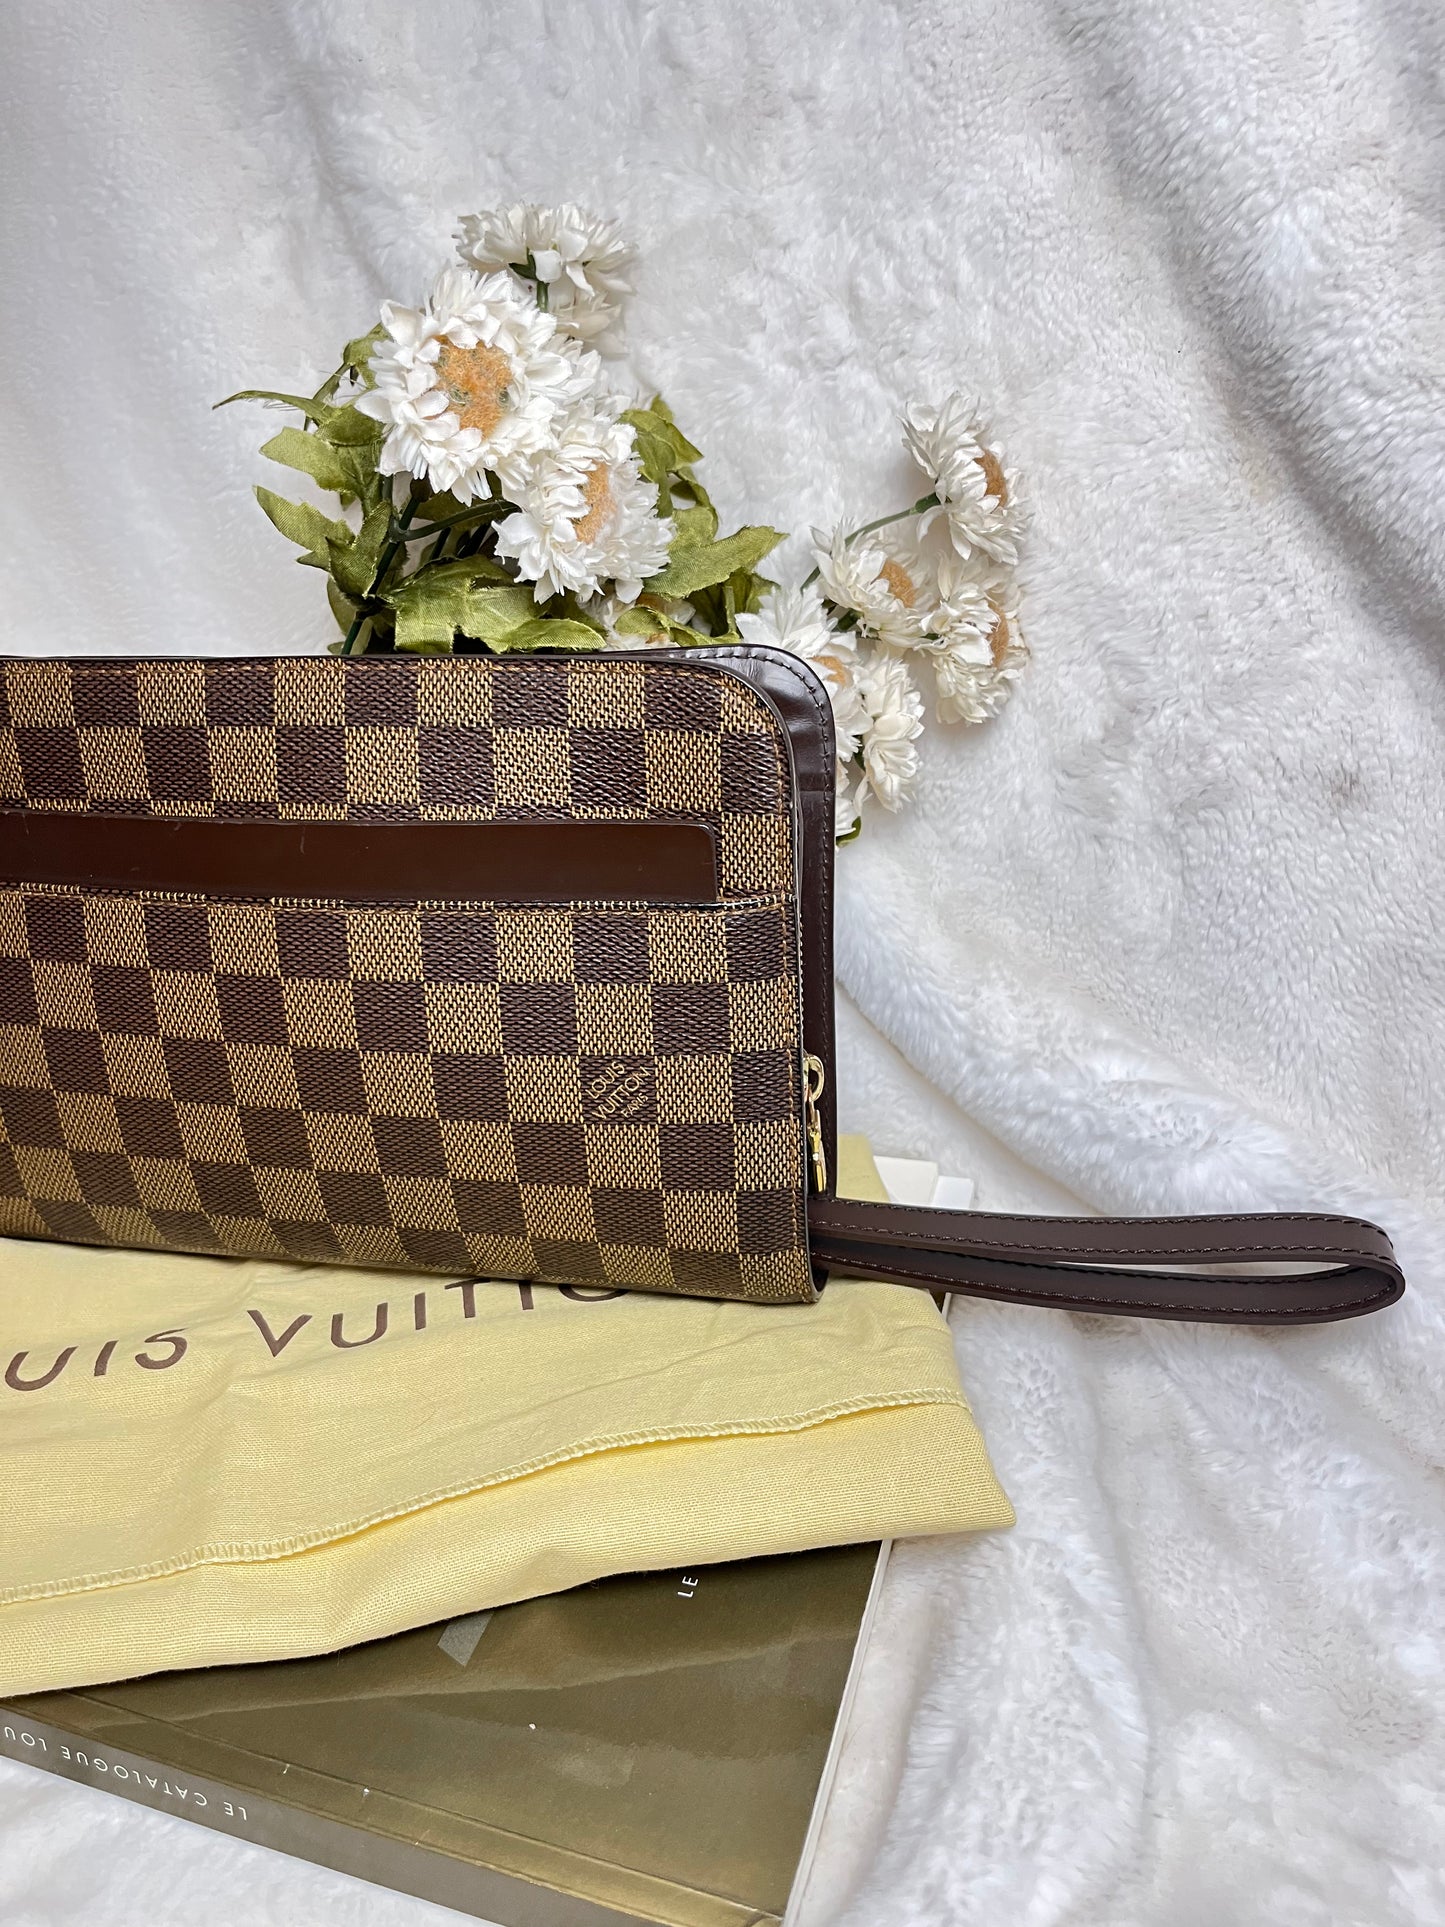 Authentic pre-owned Louis Vuitton st Louis clutch